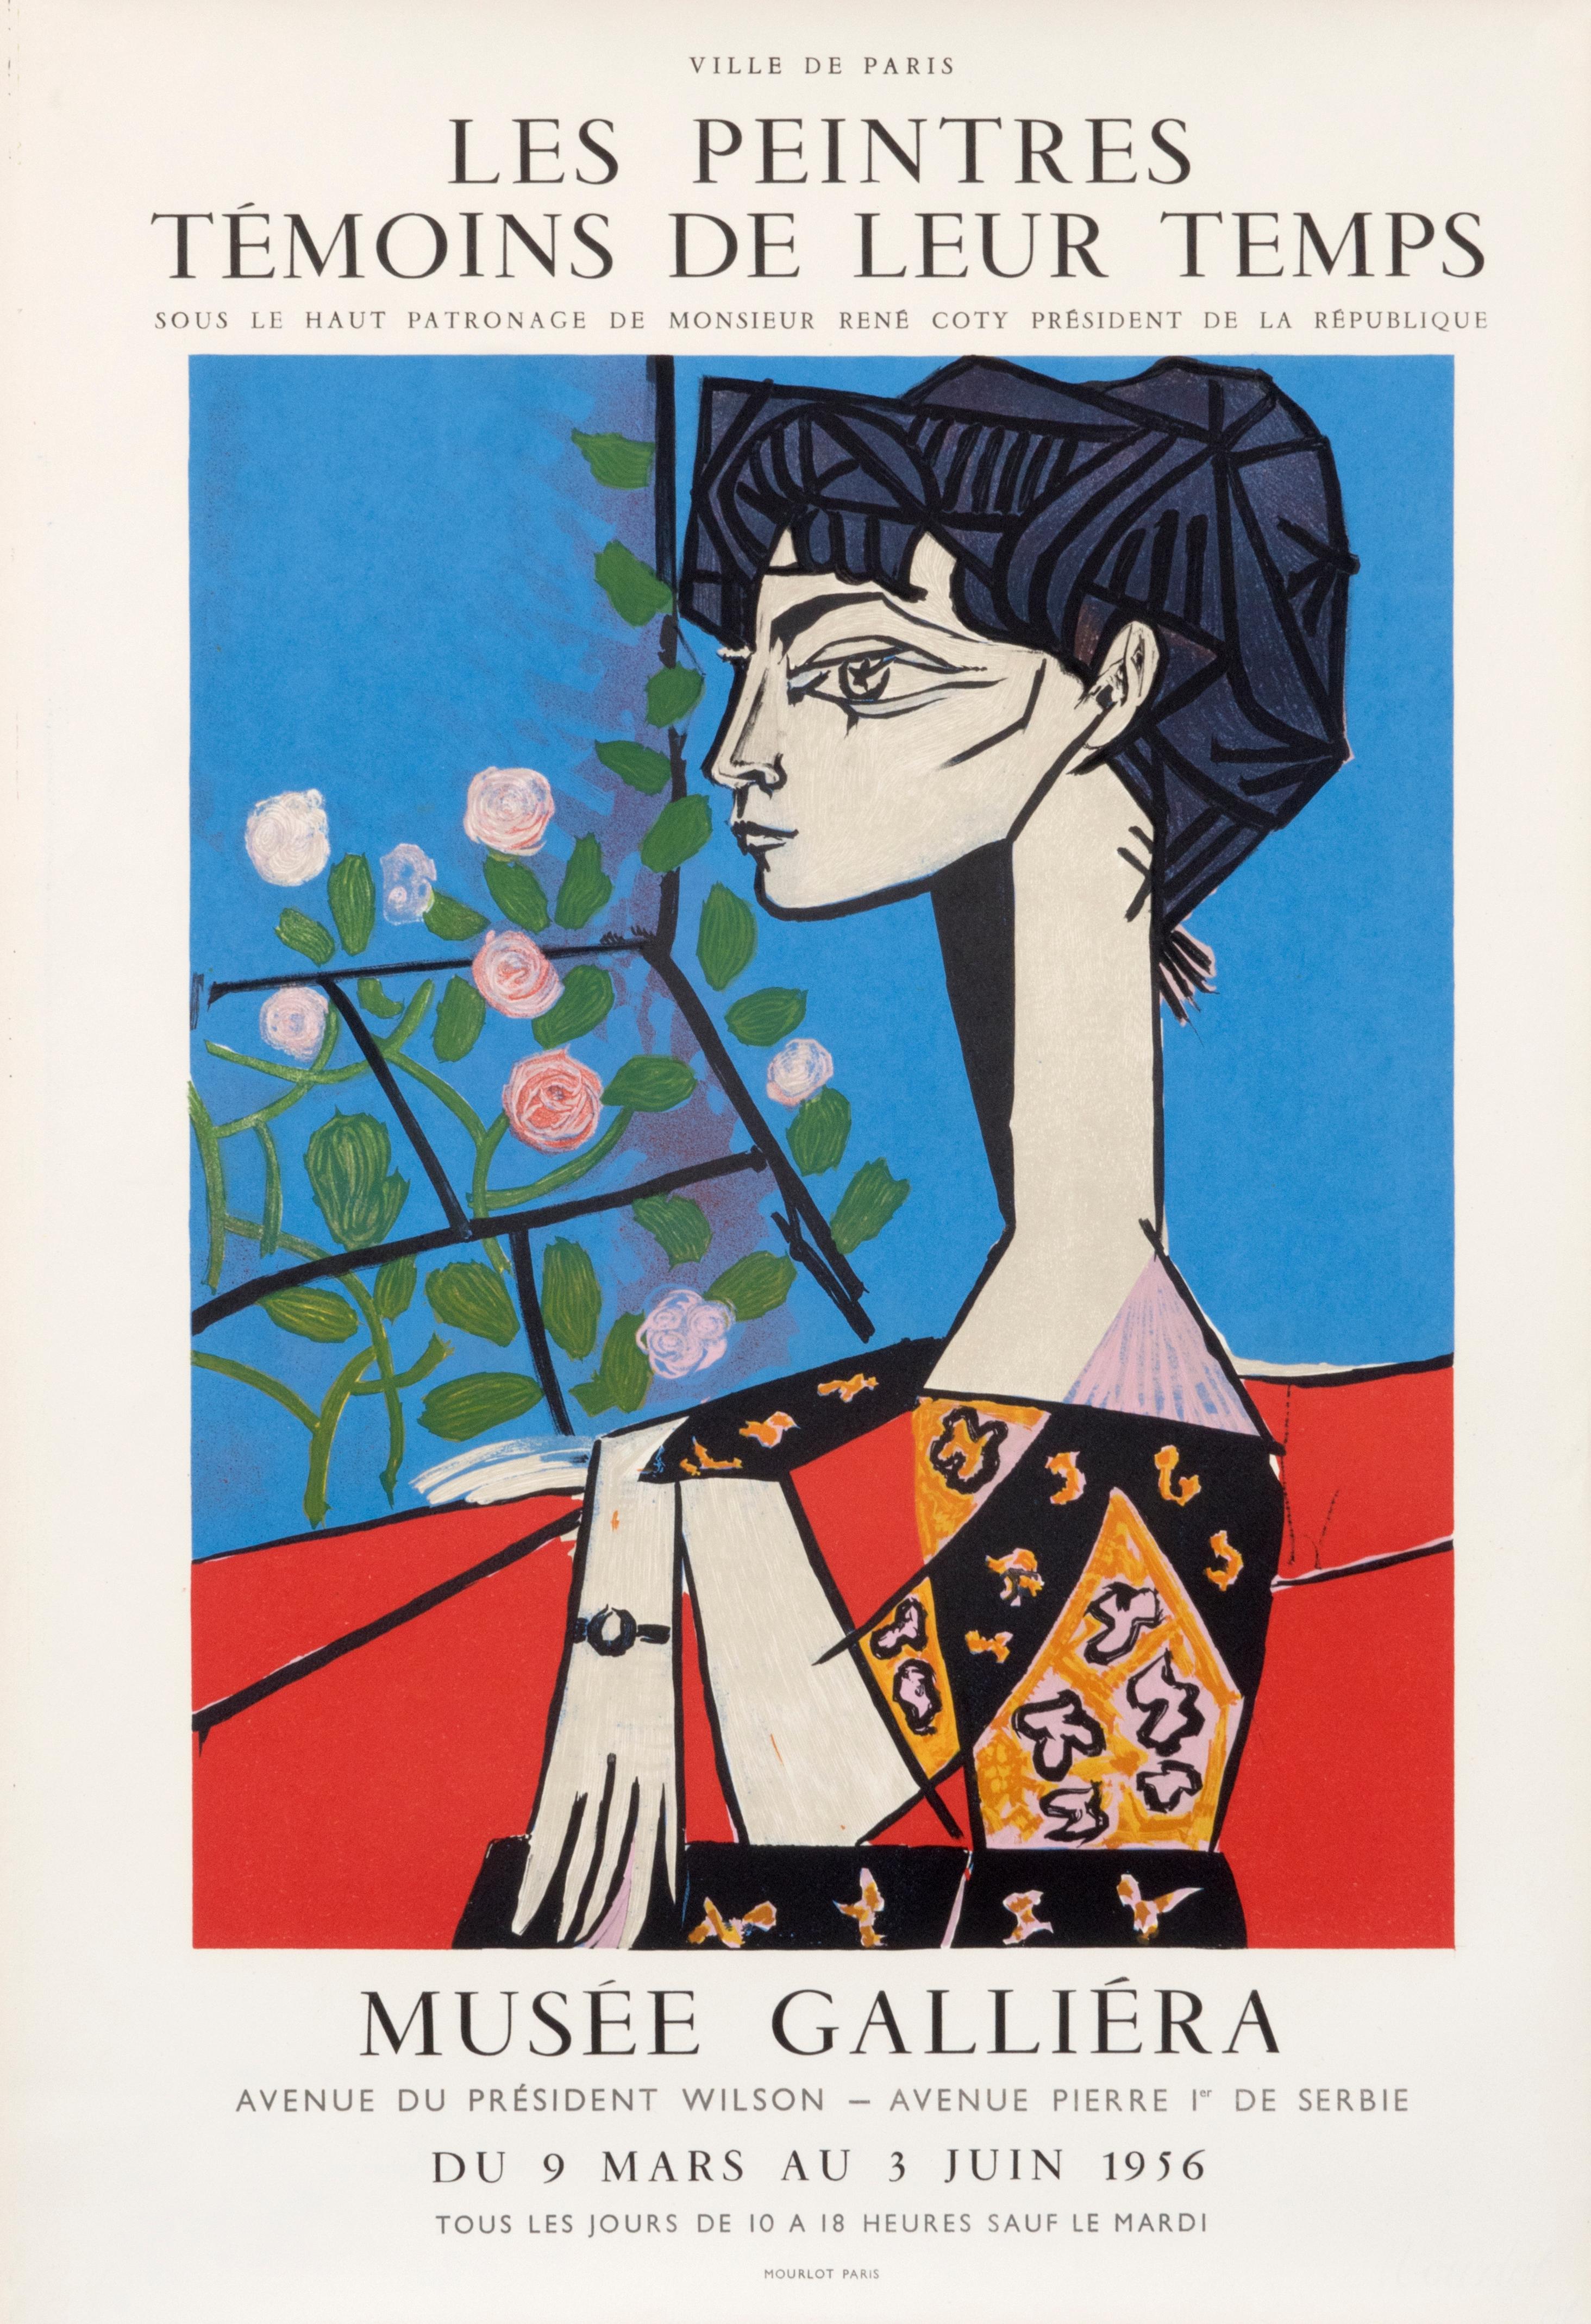 "Les Peintres Temoins de leurs Temps" Vintage Picasso French Exhibition Poster - Print by (after) Pablo Picasso